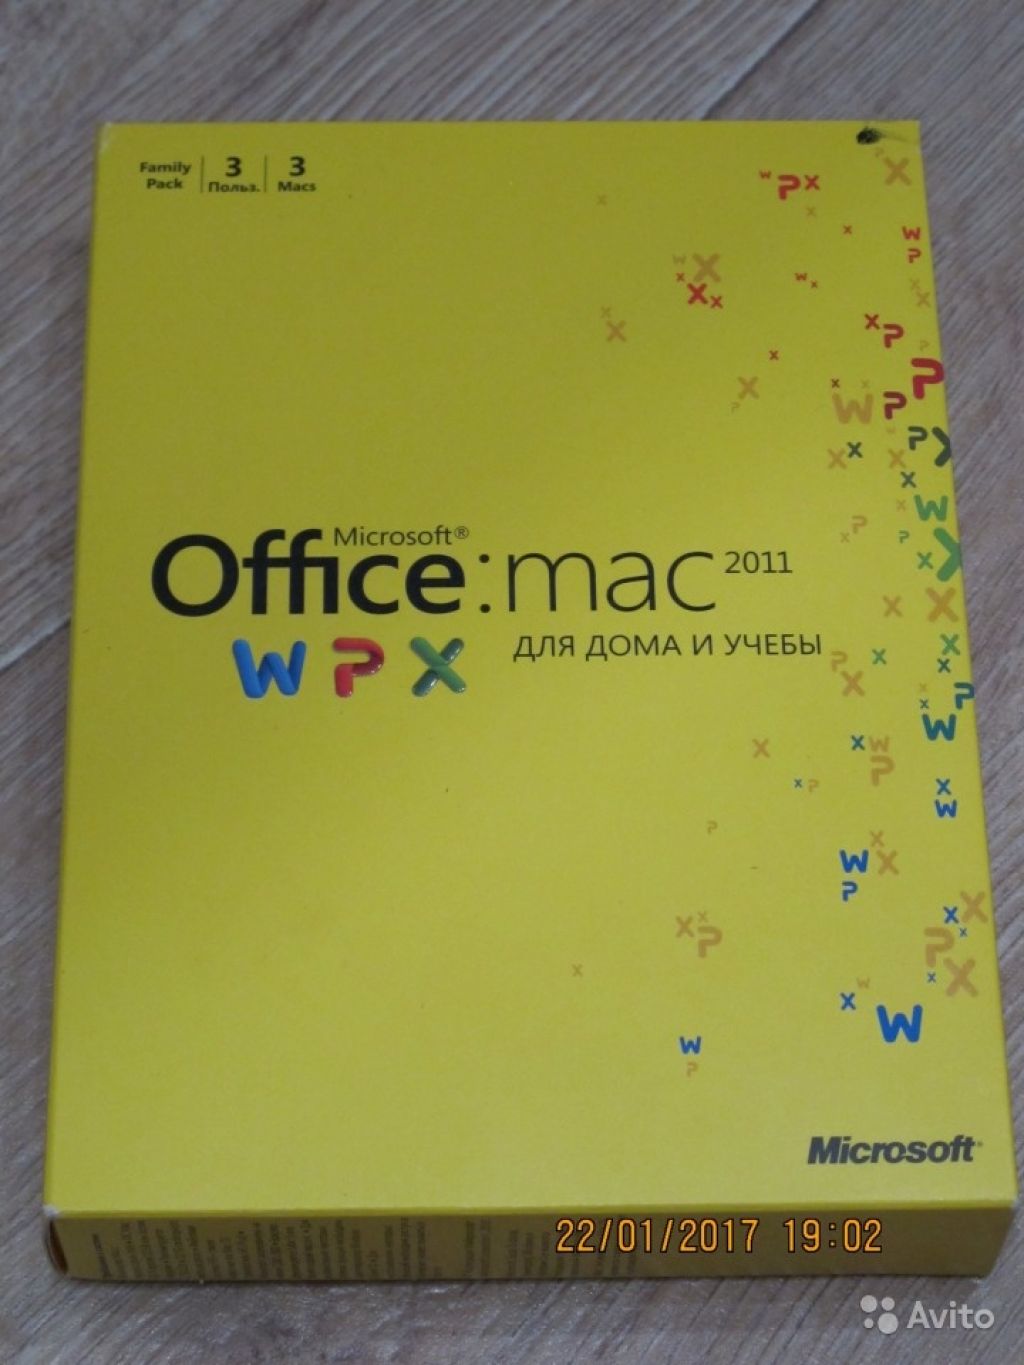 Microsoft Office for Mac для дома и учёбы 2011 в Москве. Фото 1